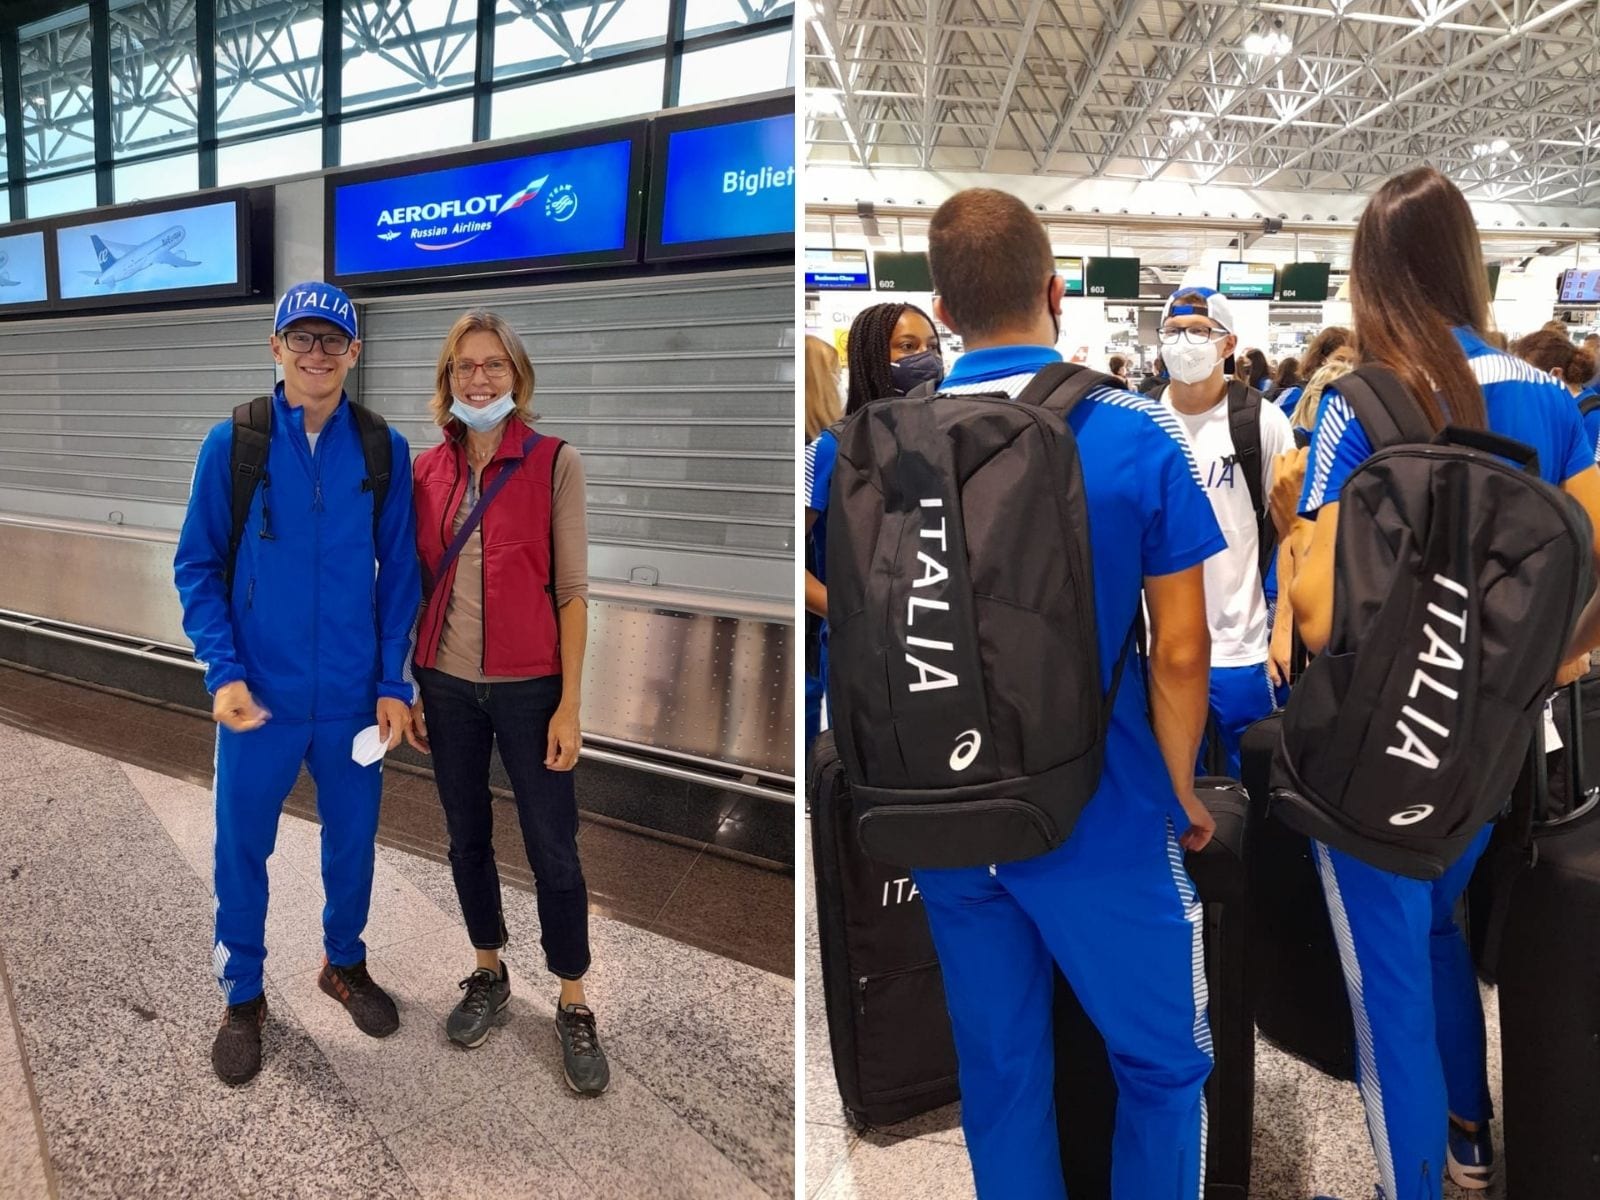 Atletica: Luraschi, Marcomin e Cappelletti parte l’avventura europea in maglia azzurra